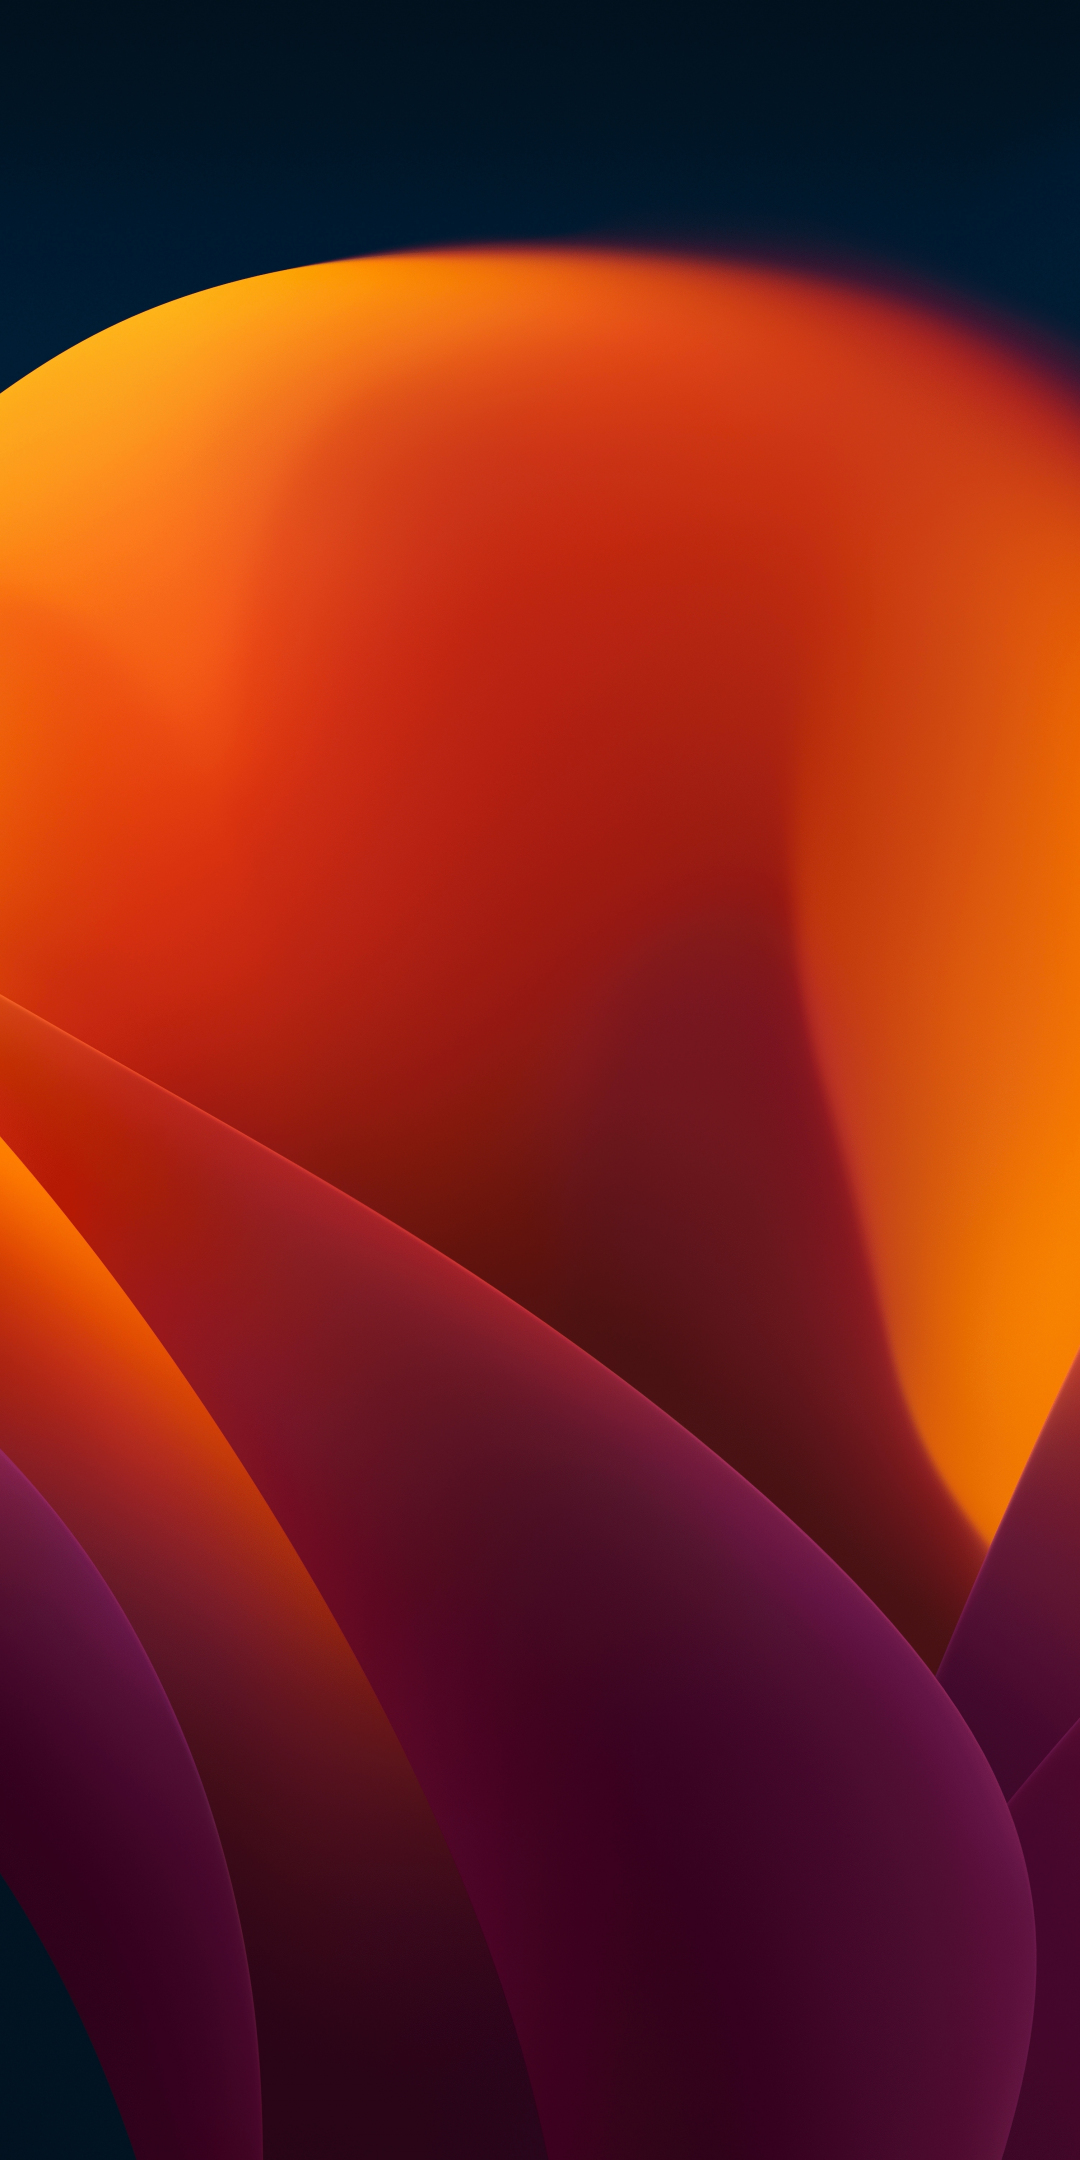 Orange flower, blossom, abstract, apple stock, 1080x2160 wallpaper